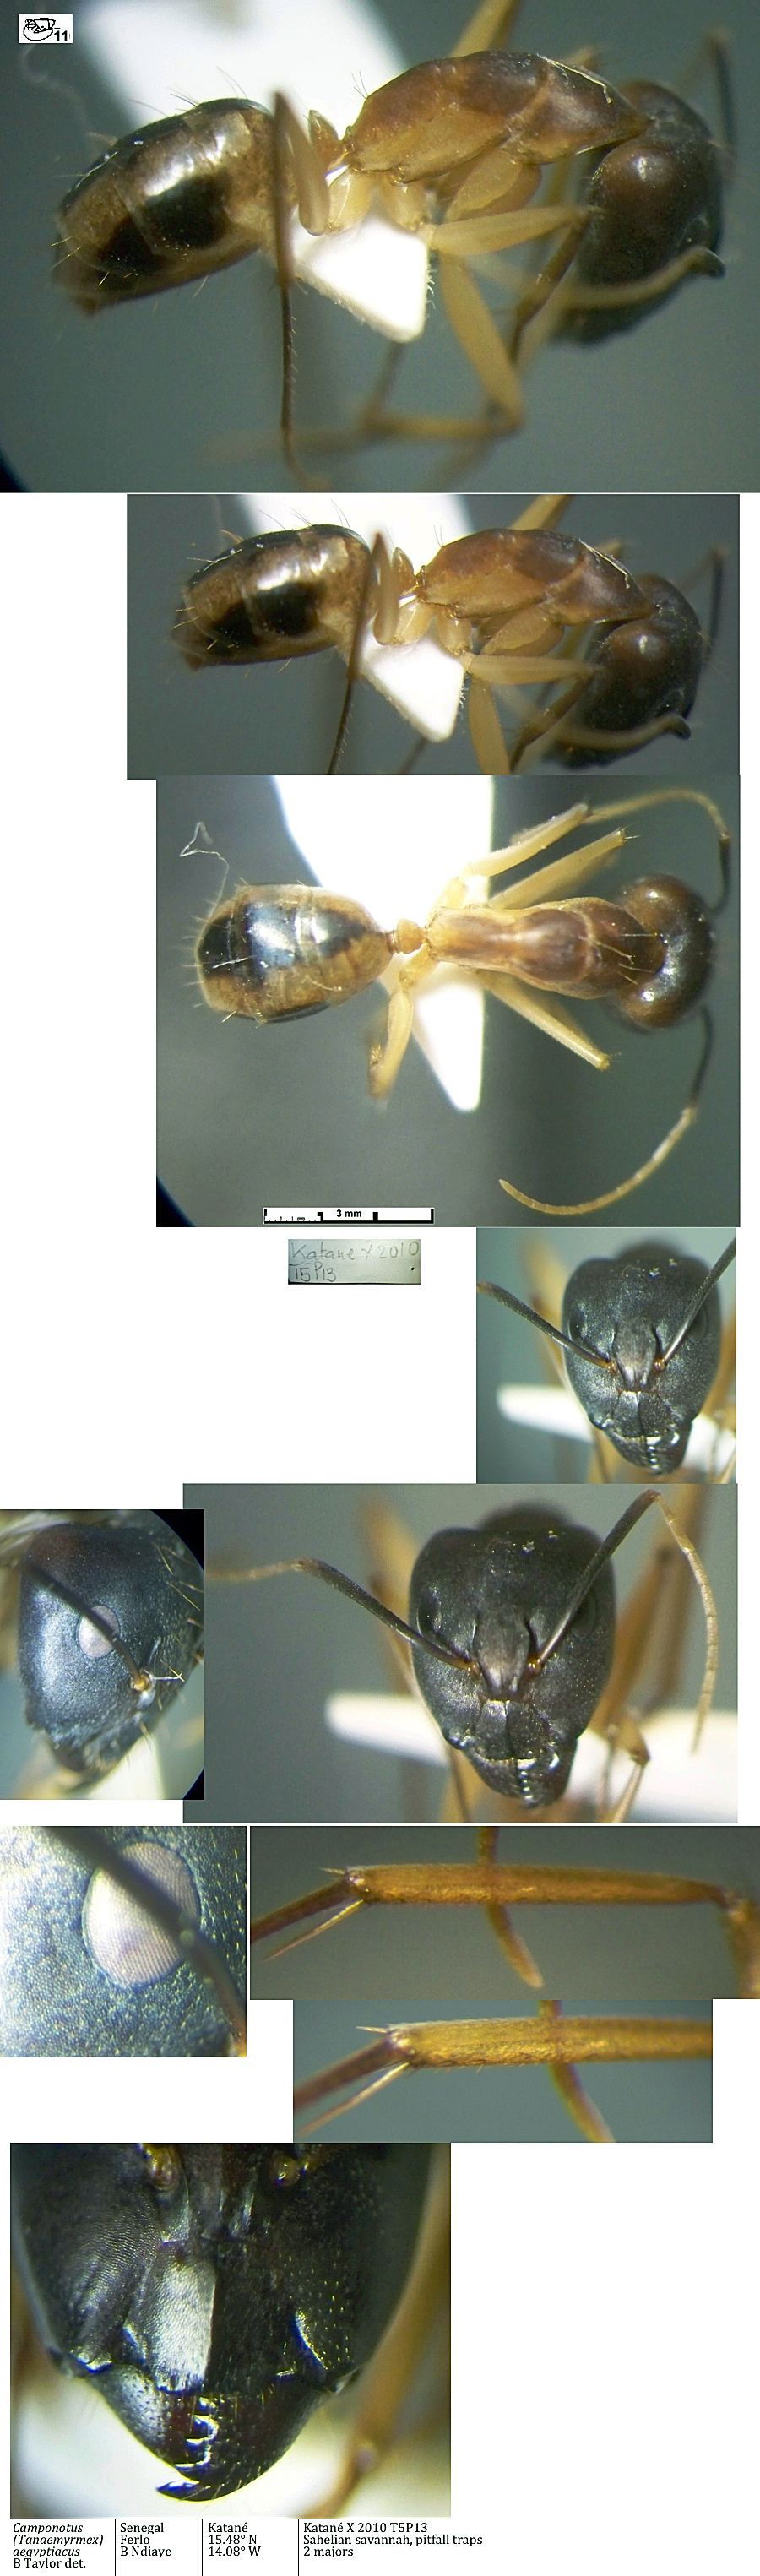 {Camponotus aegyptiacus major}